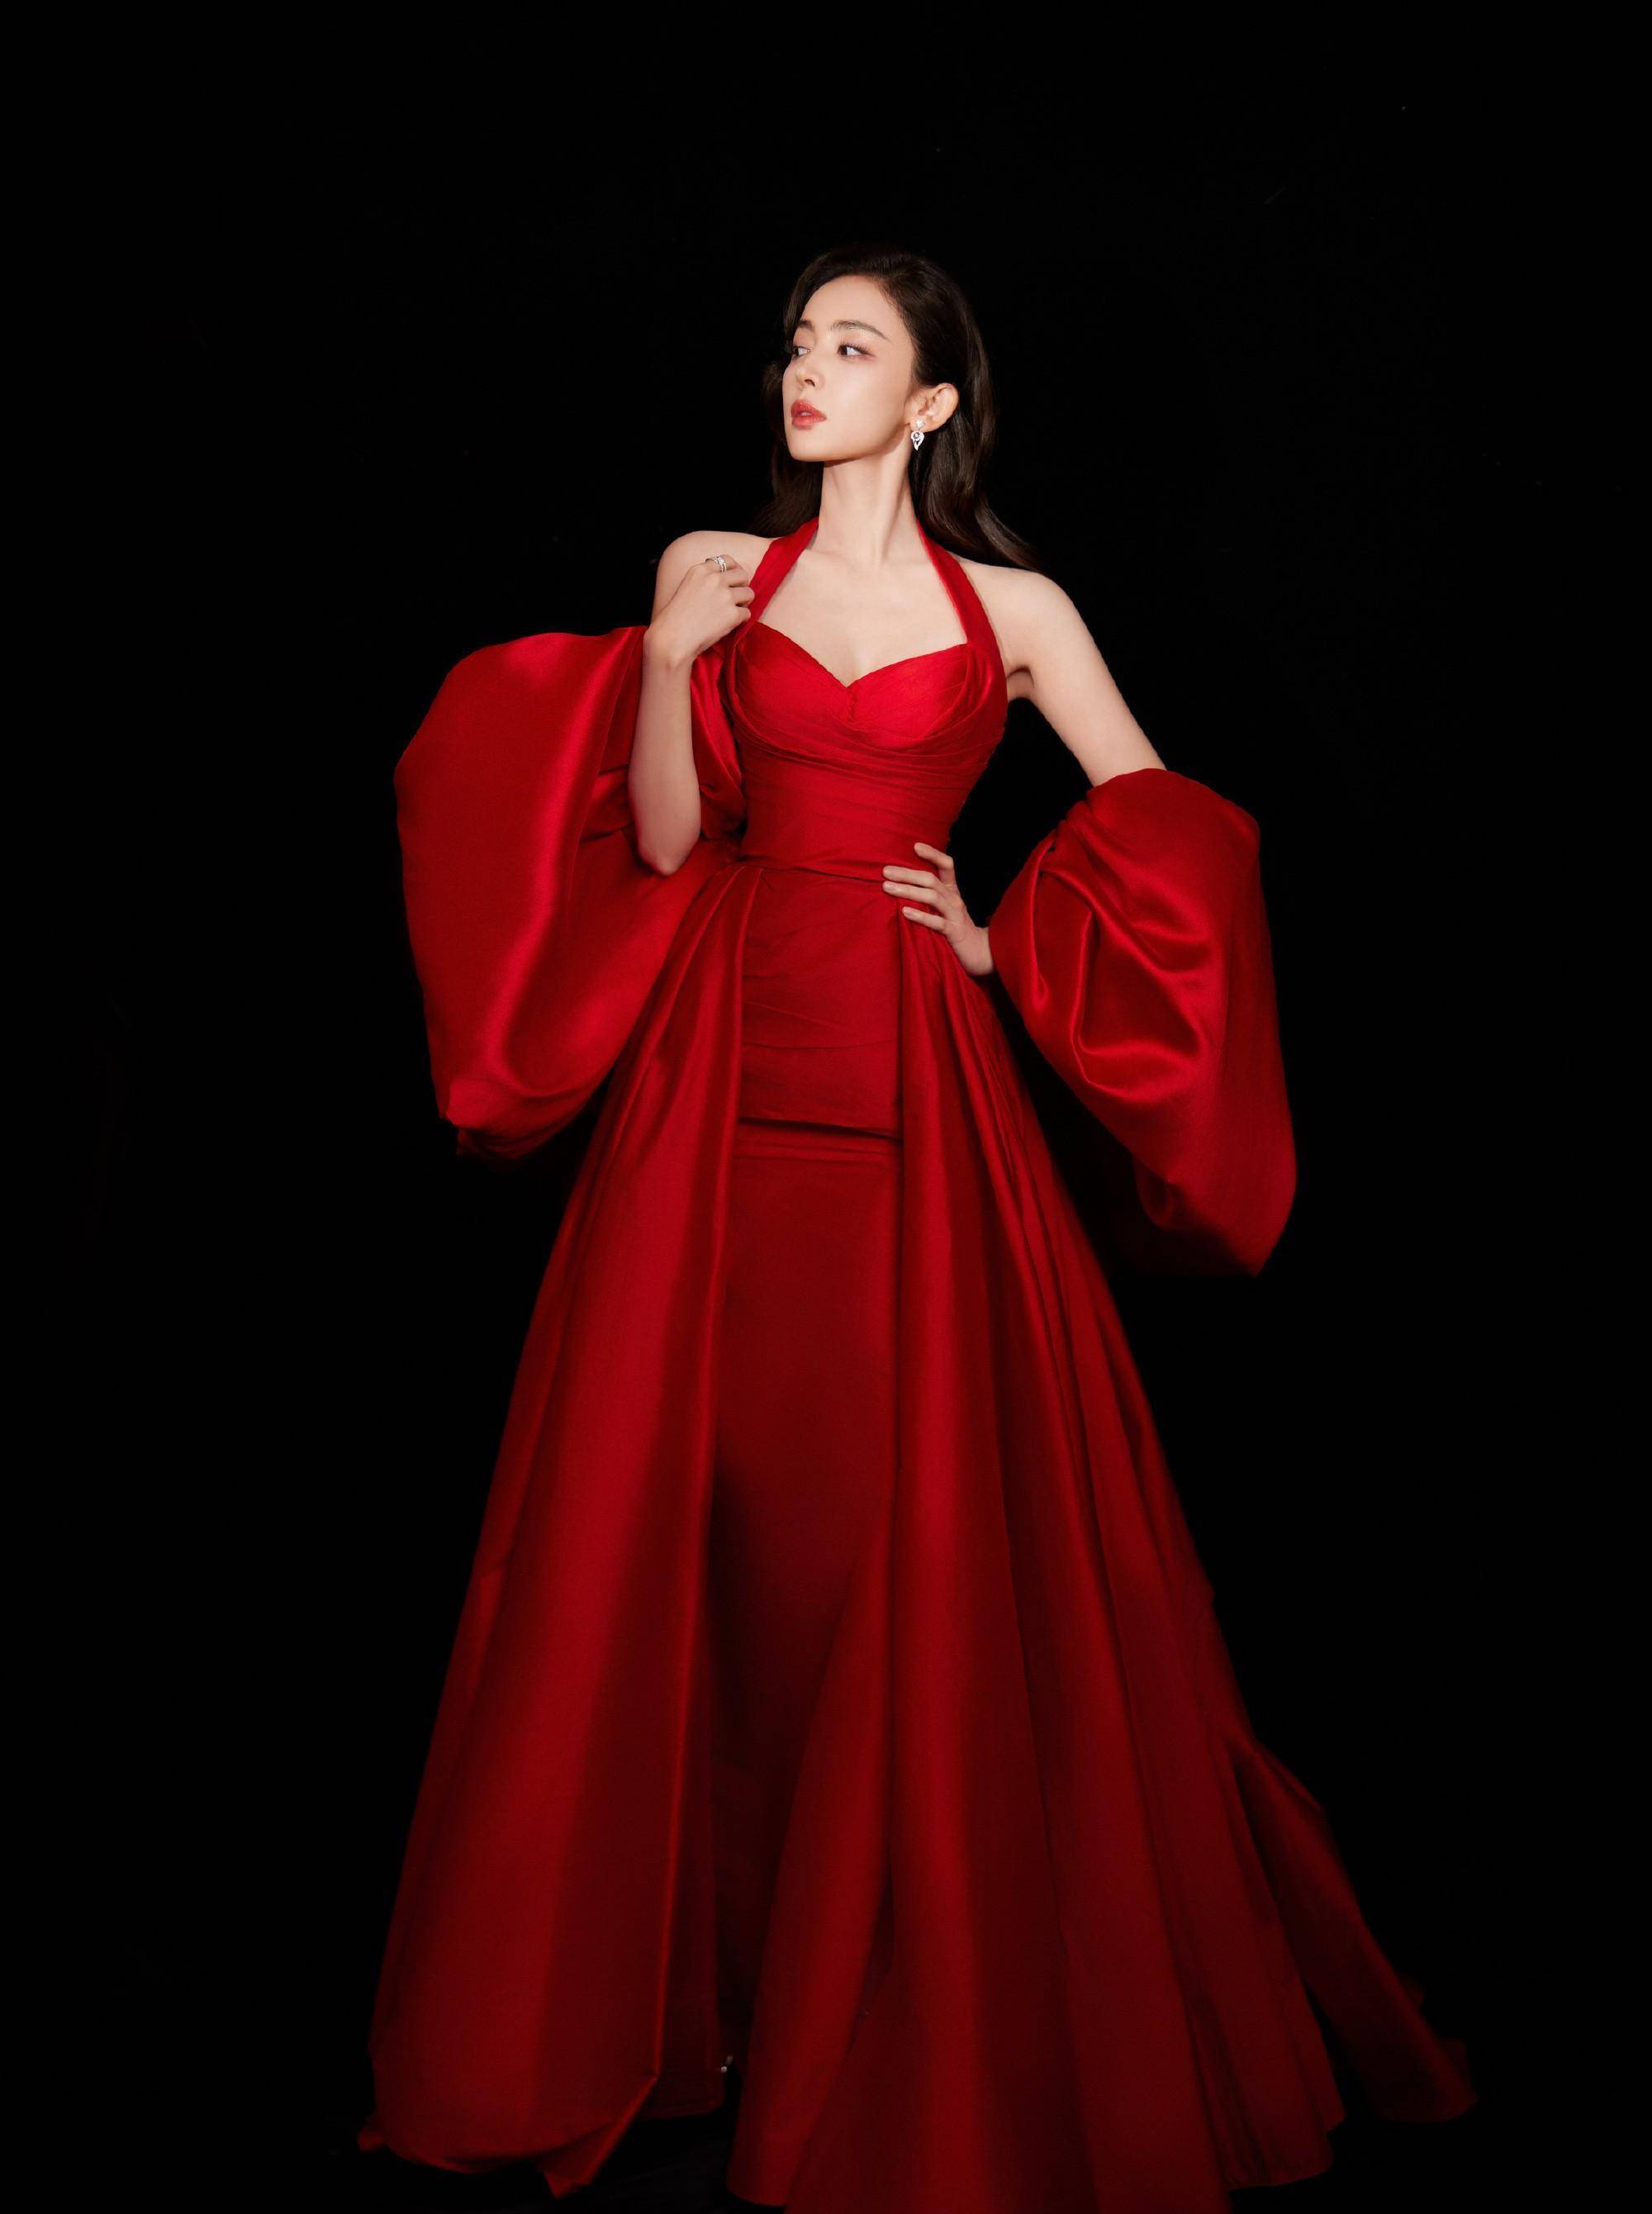 古力娜扎最新红玫瑰礼服造型,明艳照人,简直让人心动不已!